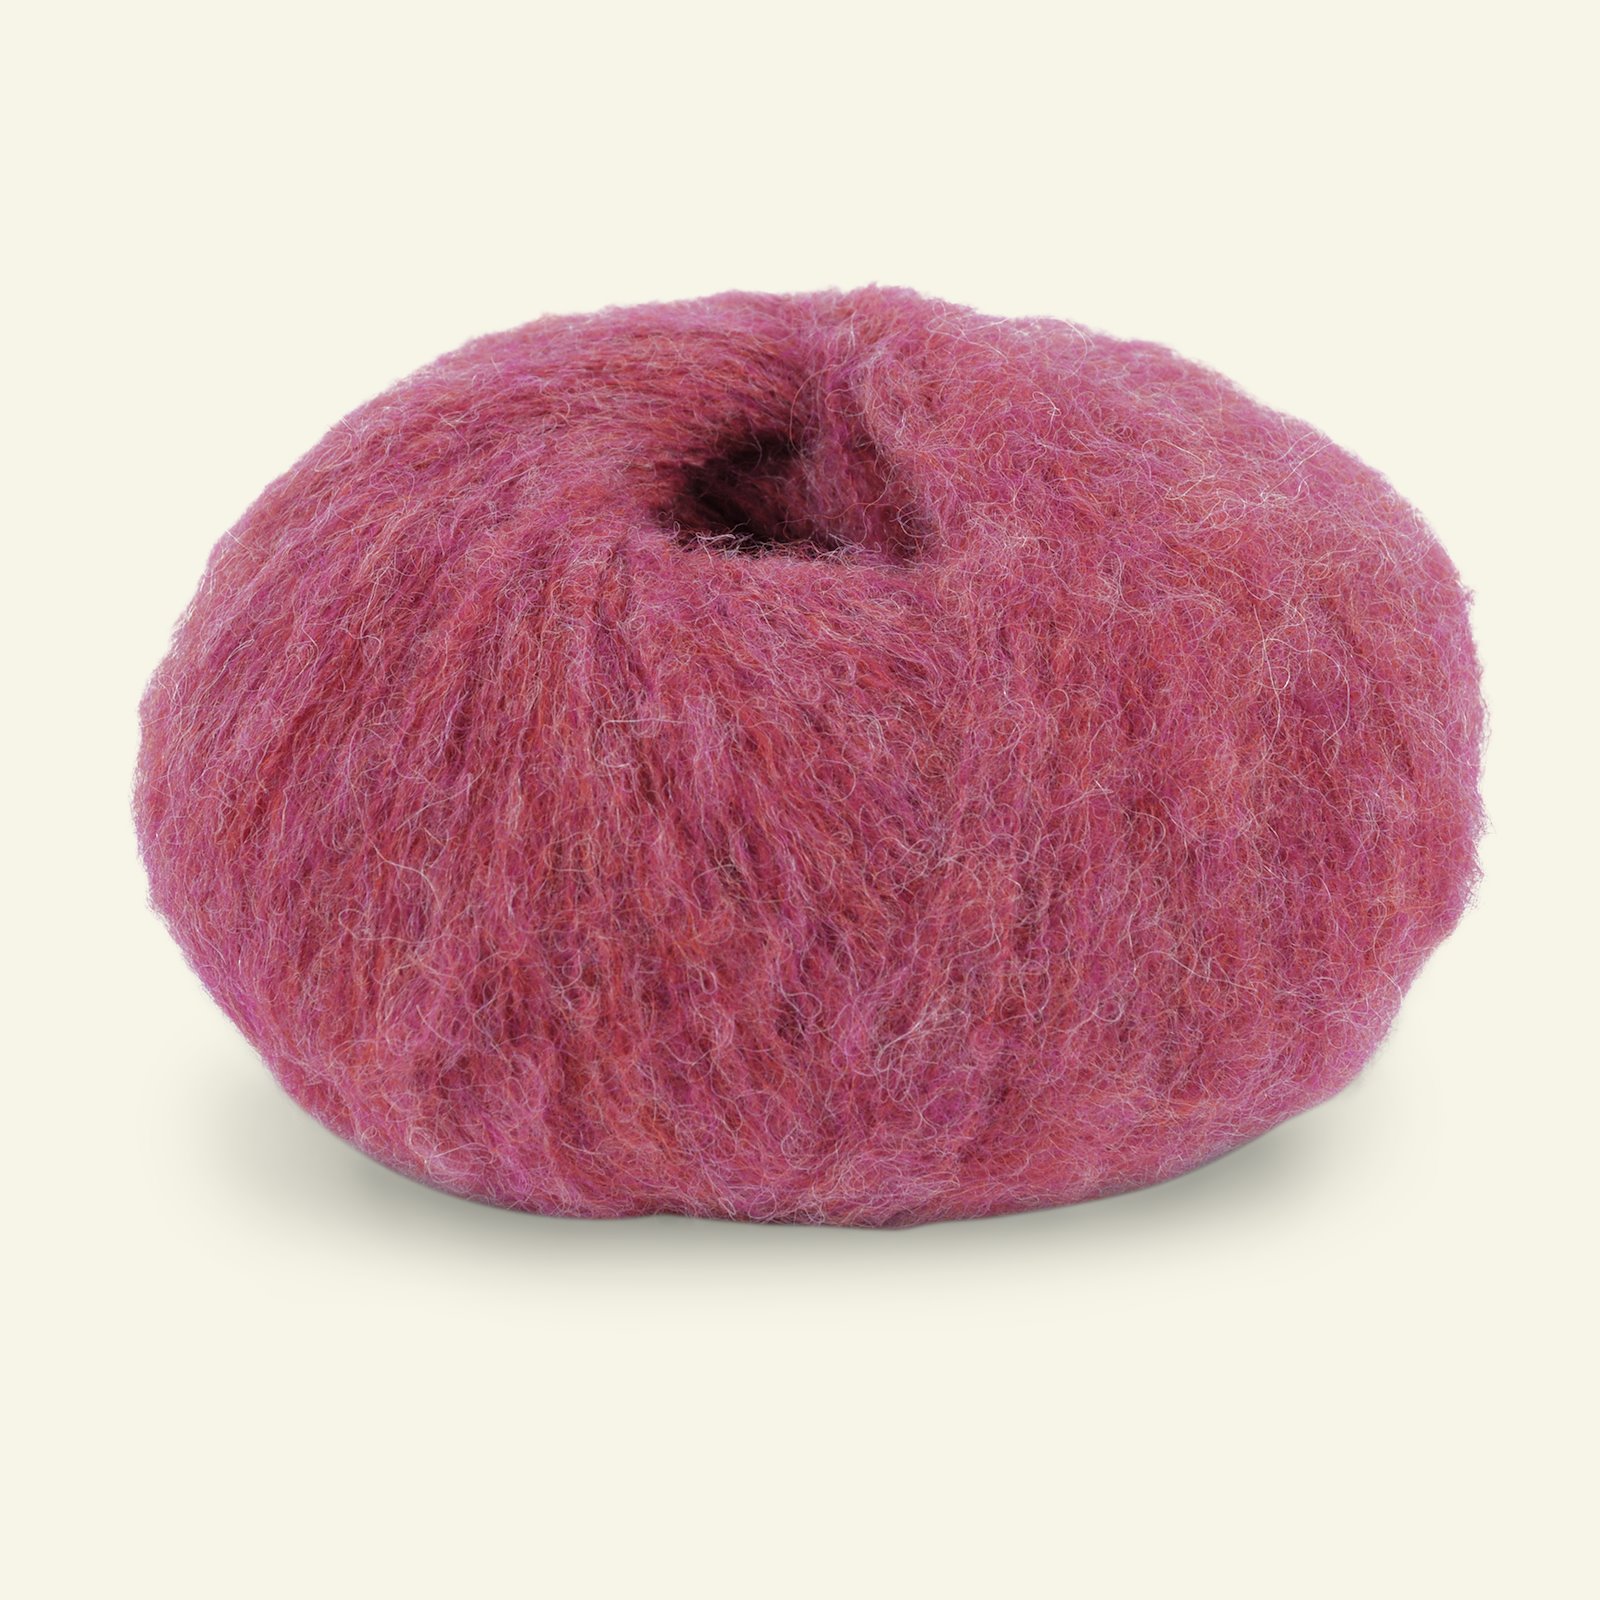 Du Store Alpakka, airy alpaca yarn "Faerytale", red melange (763) 90000594_pack_b